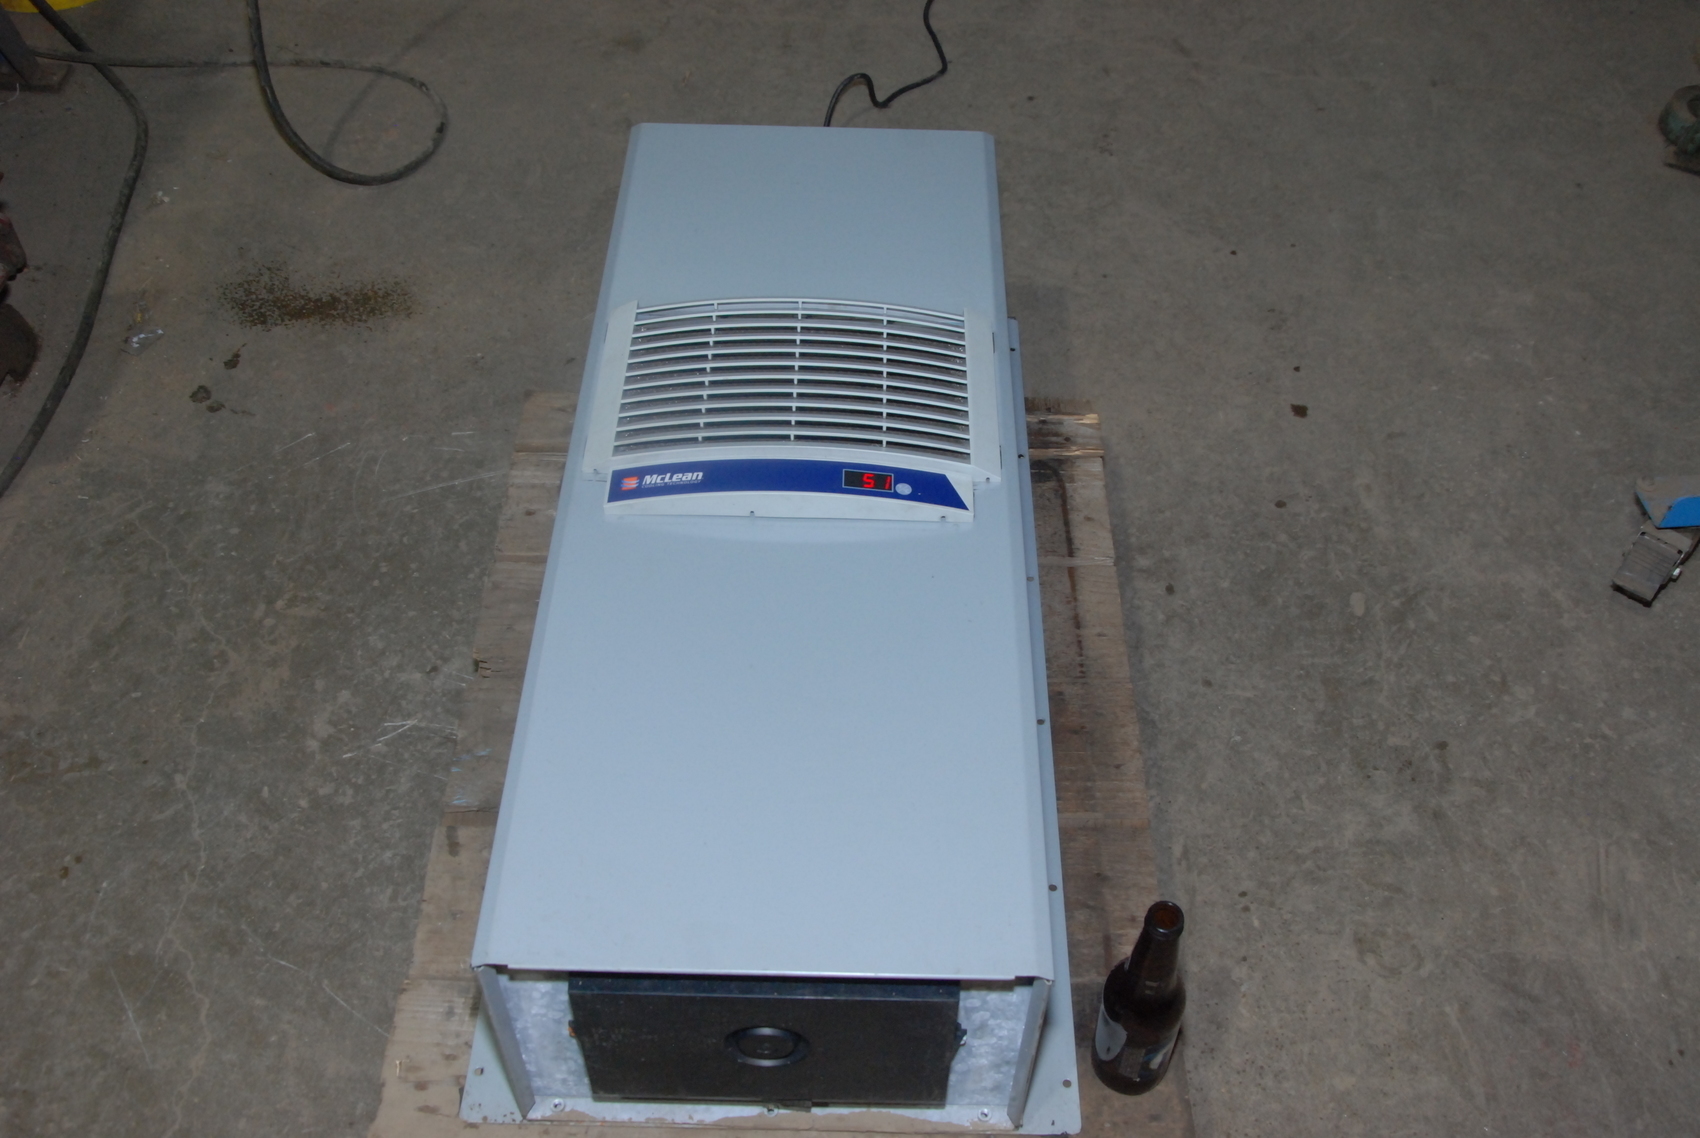 Mclean M36-0616-307H Air Conditioner 6000BTU 115V 14A Phase 1